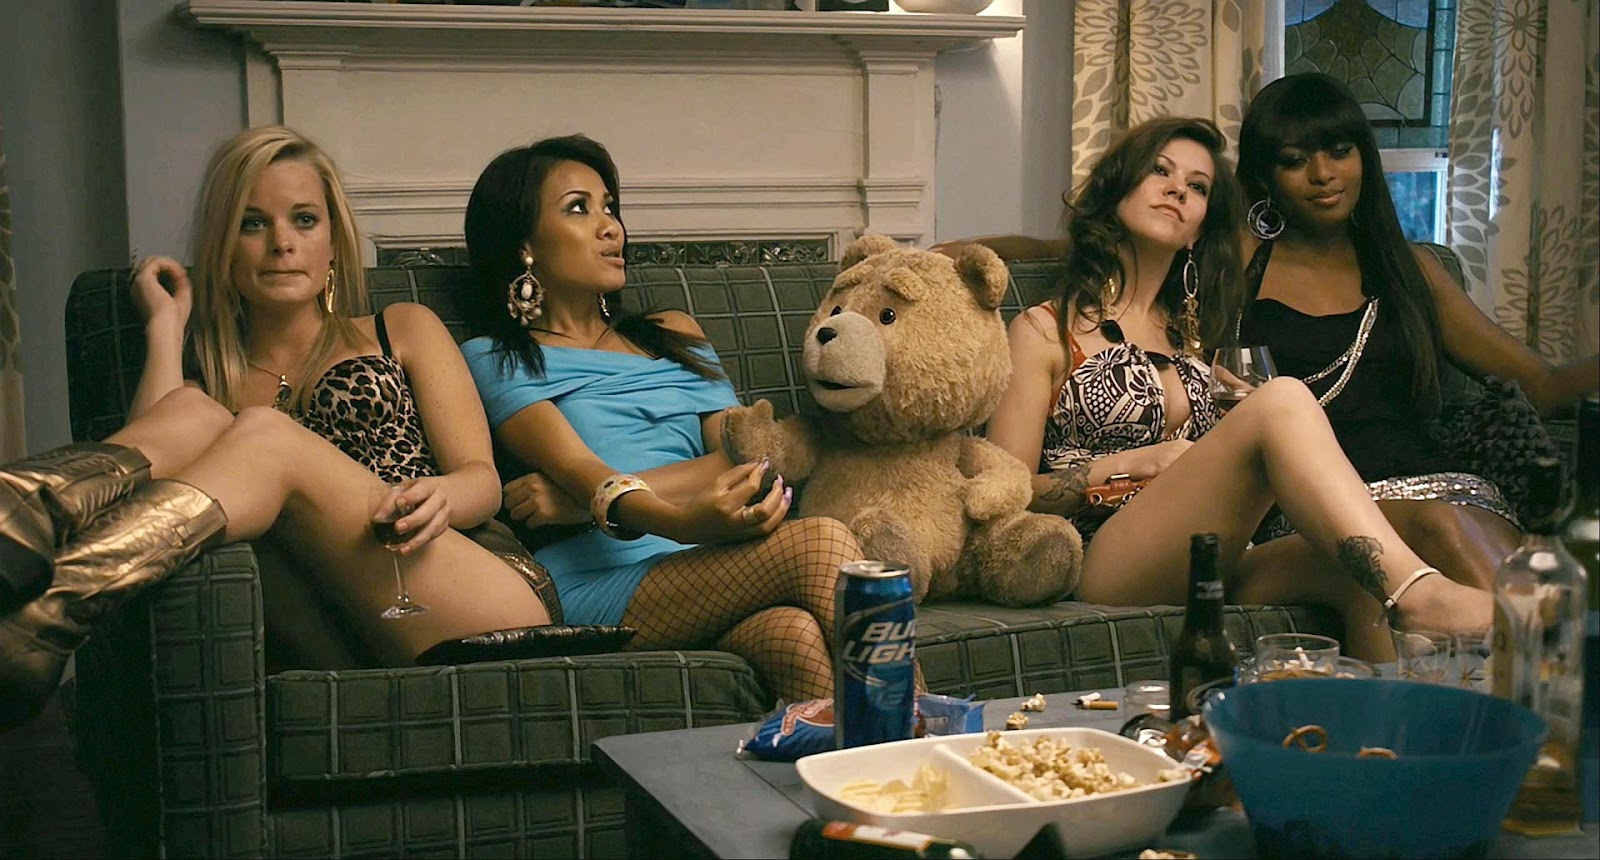 Cine "0 a 10" (puntuación a la última película vista, críticas, etc.) - Página 3 Ted+Movie+Bitches+Couch+Bear+Prostitutas+2012